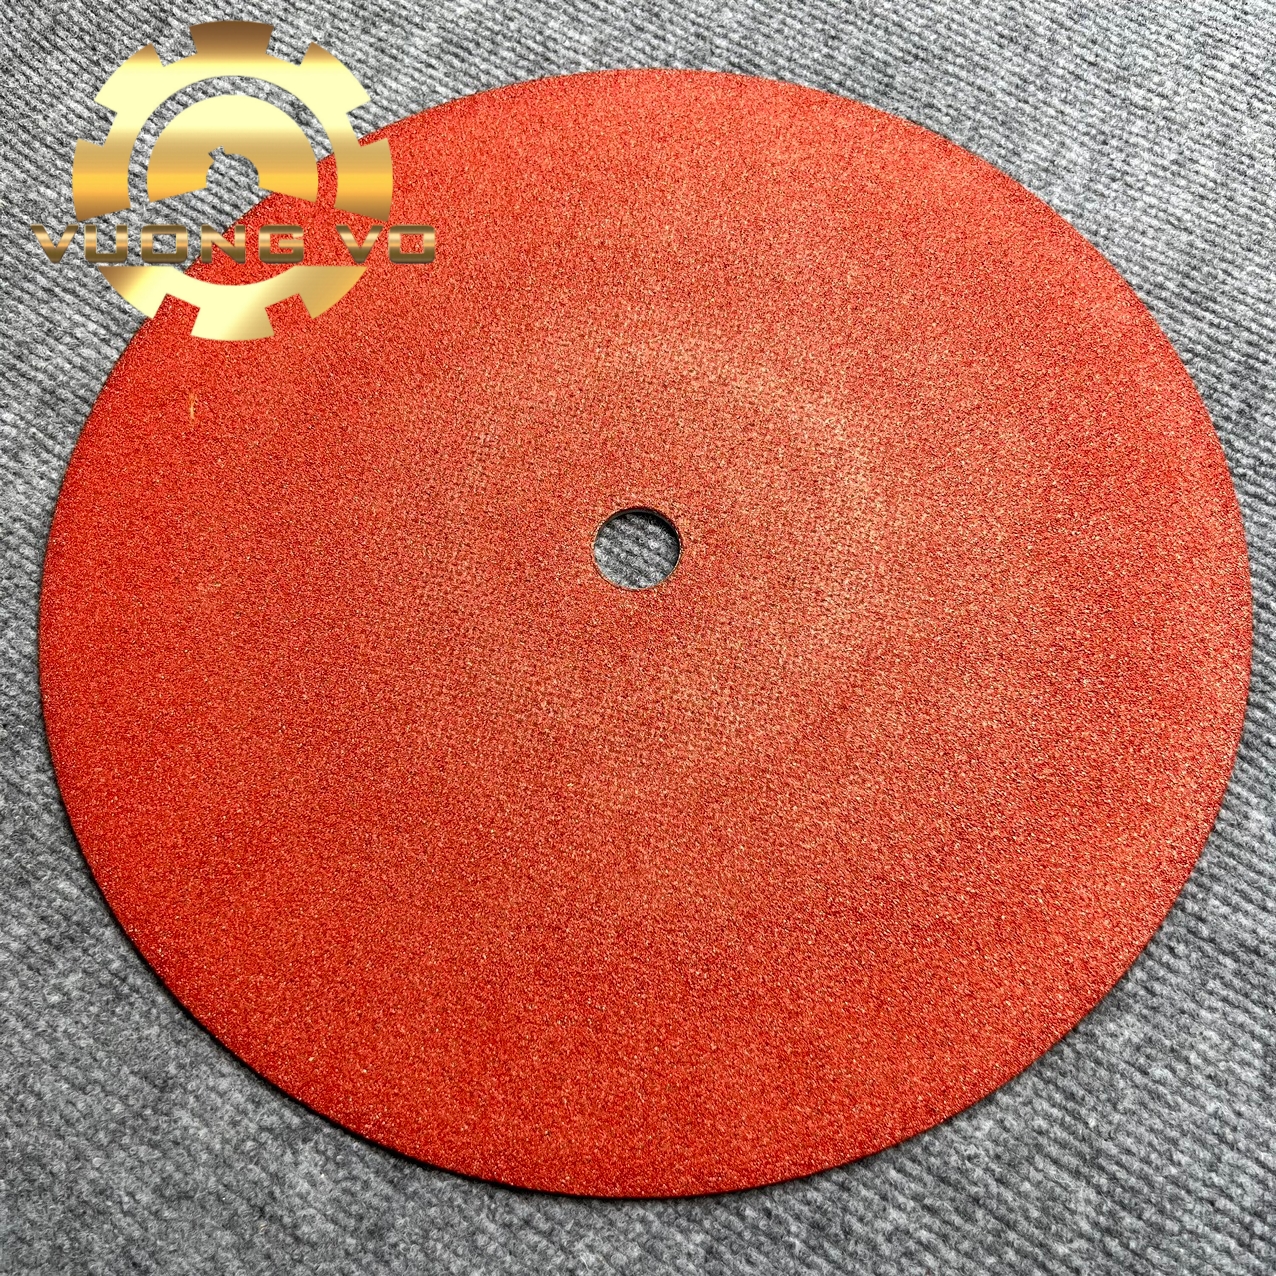 Hình ảnh Đá cắt sắt-đá cắt inox-đá cắt máy bàn-đá cắt 350mm đỏ kích thước 355x3.0x25.4mm (Gía đã bao gồm VAT)